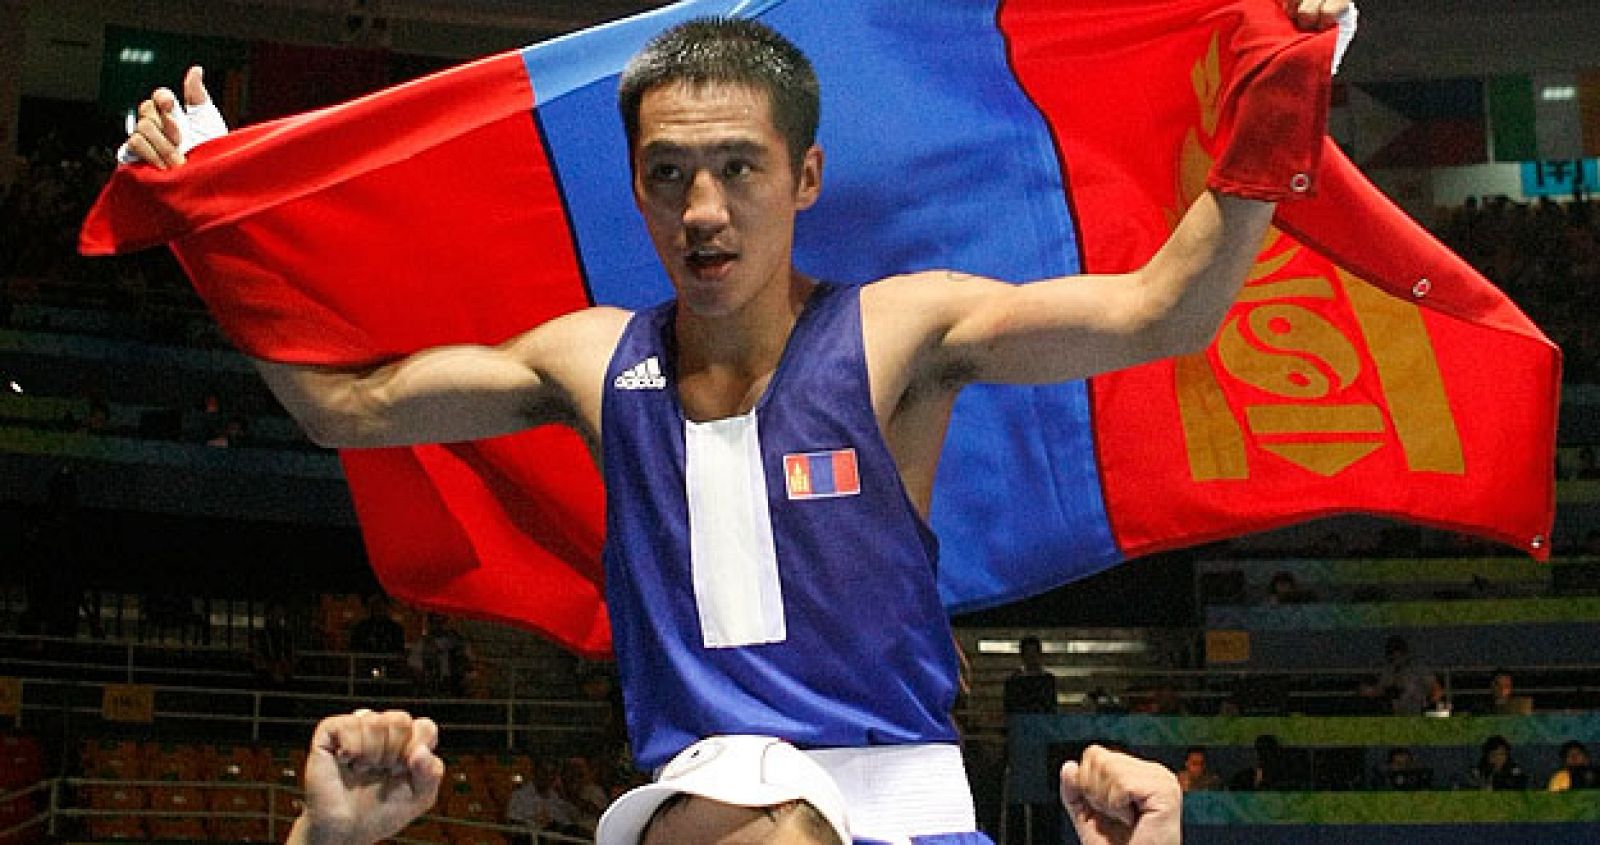 El púgil mongol Badar-Uugan estaba exultante tras ganar la medalla de oro en peso mosca